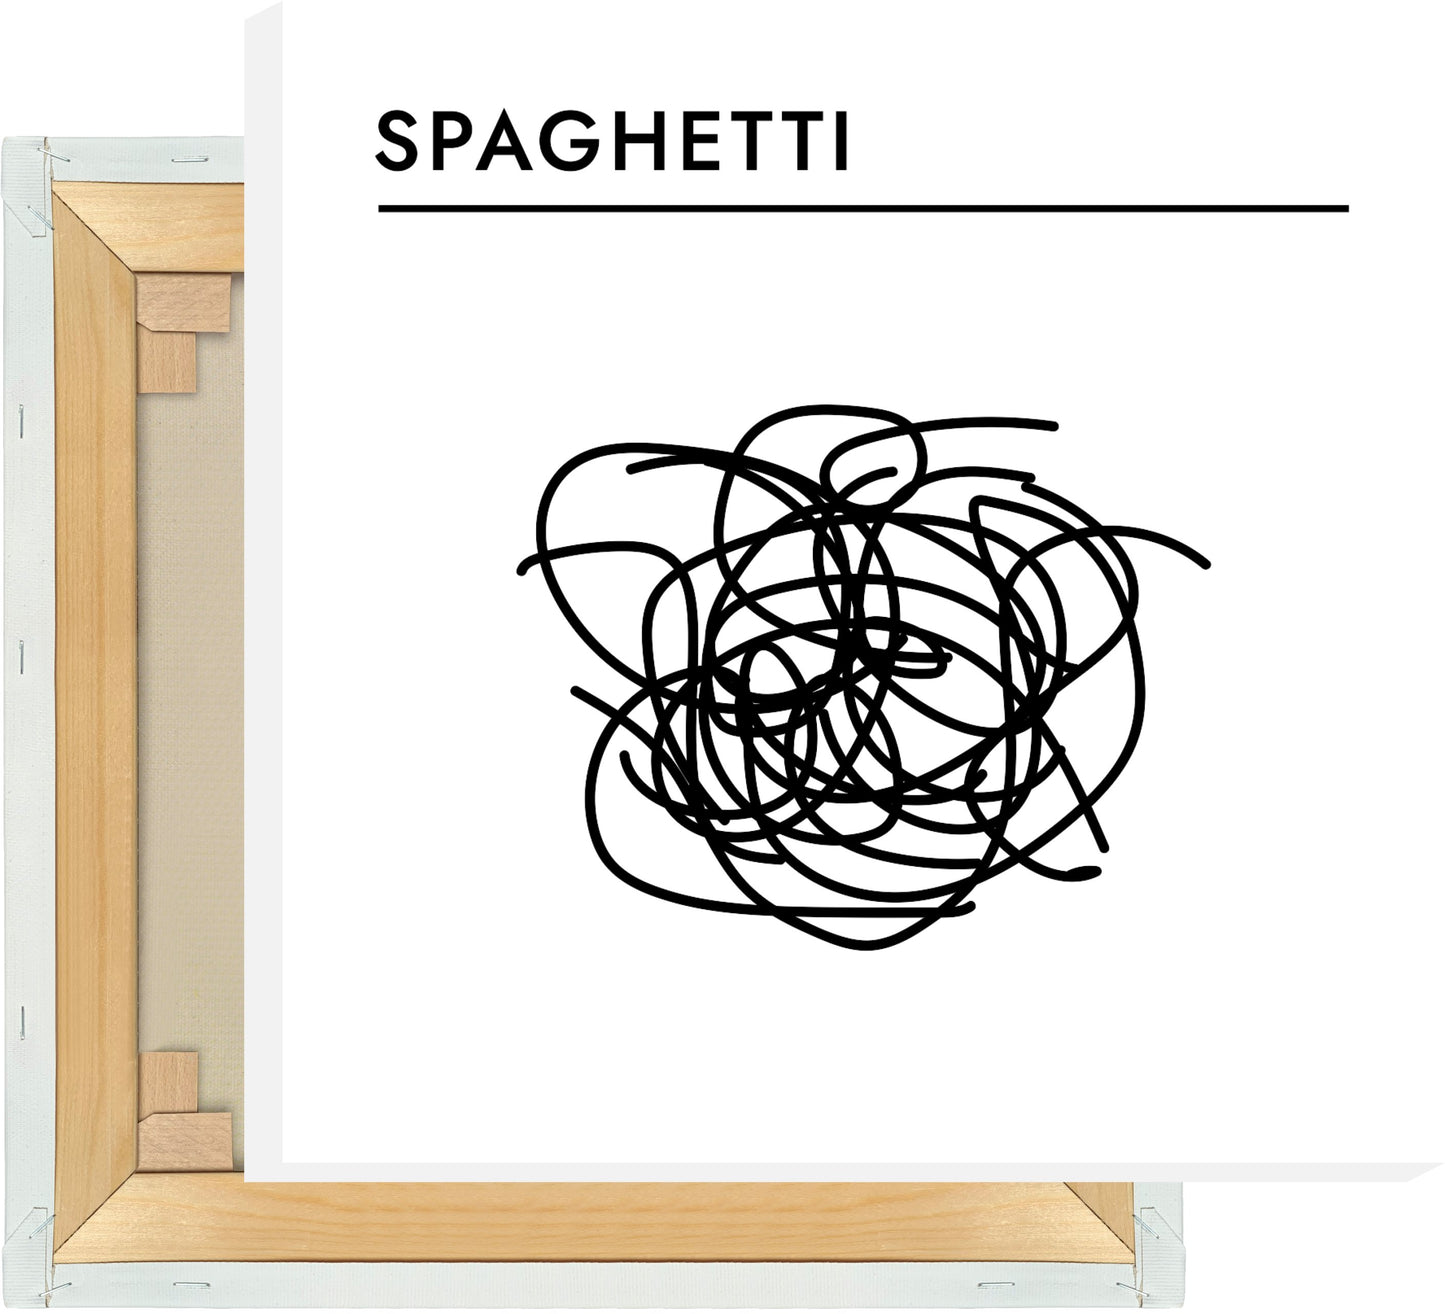 Leinwand Pasta - Spaghetti #1